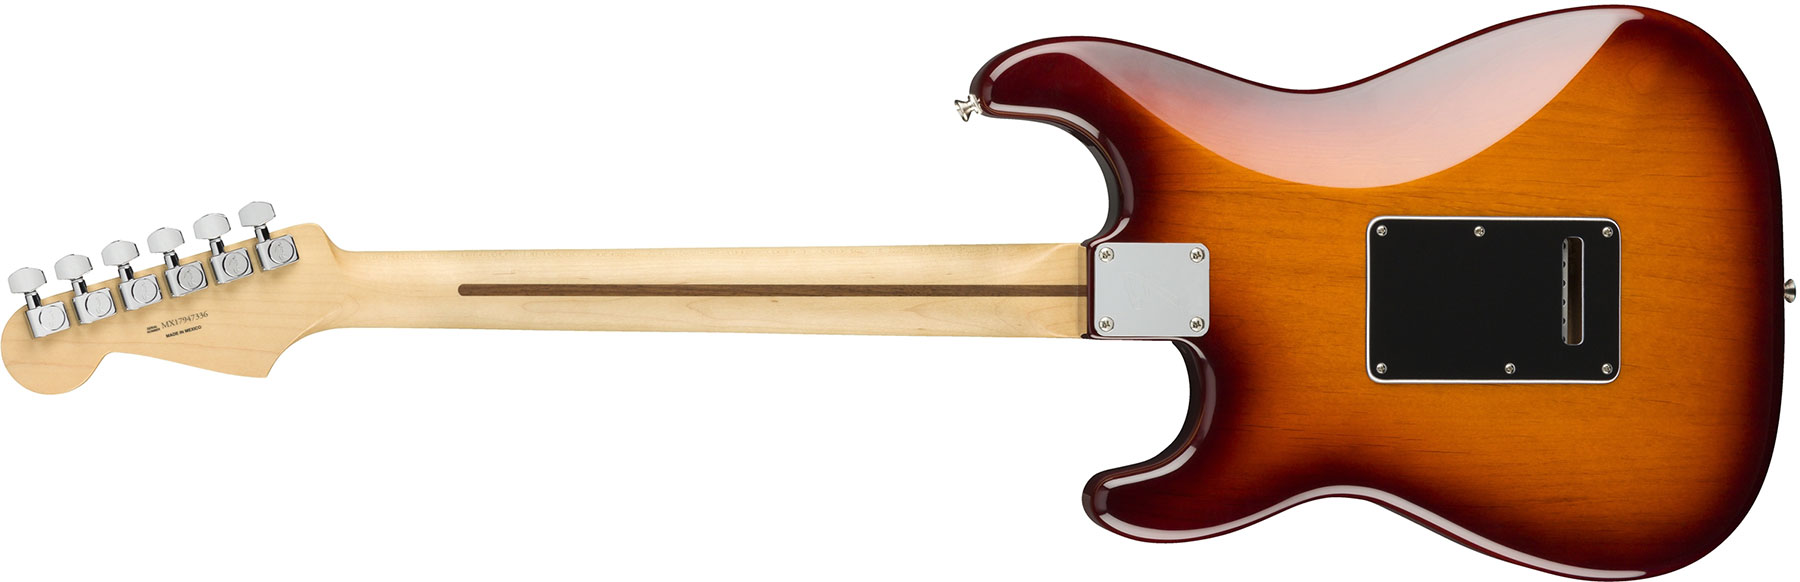 Fender Strat Player Plus Top Mex Hss Pf - Tobacco Burst - Elektrische gitaar in Str-vorm - Variation 1